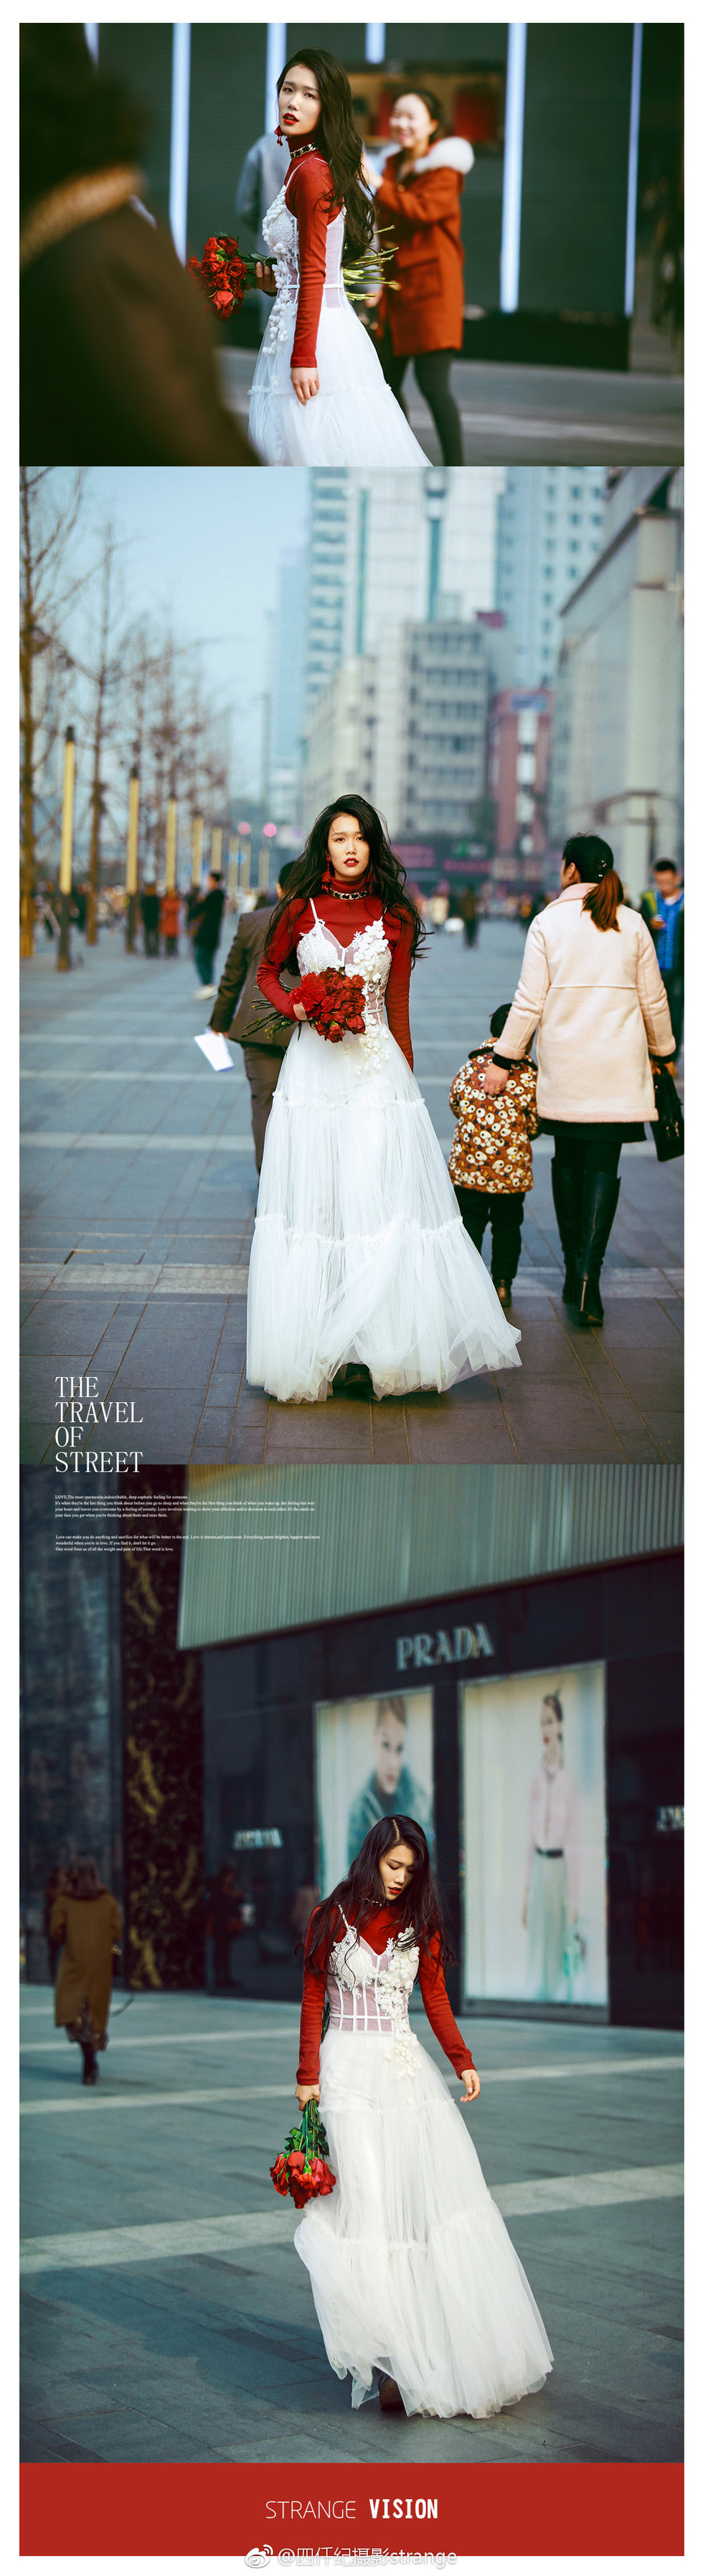 乌鲁木齐婚纱摄影_《街拍》主题,新疆乌鲁木齐婚纱摄影四仟纪旅拍工作室客片分享